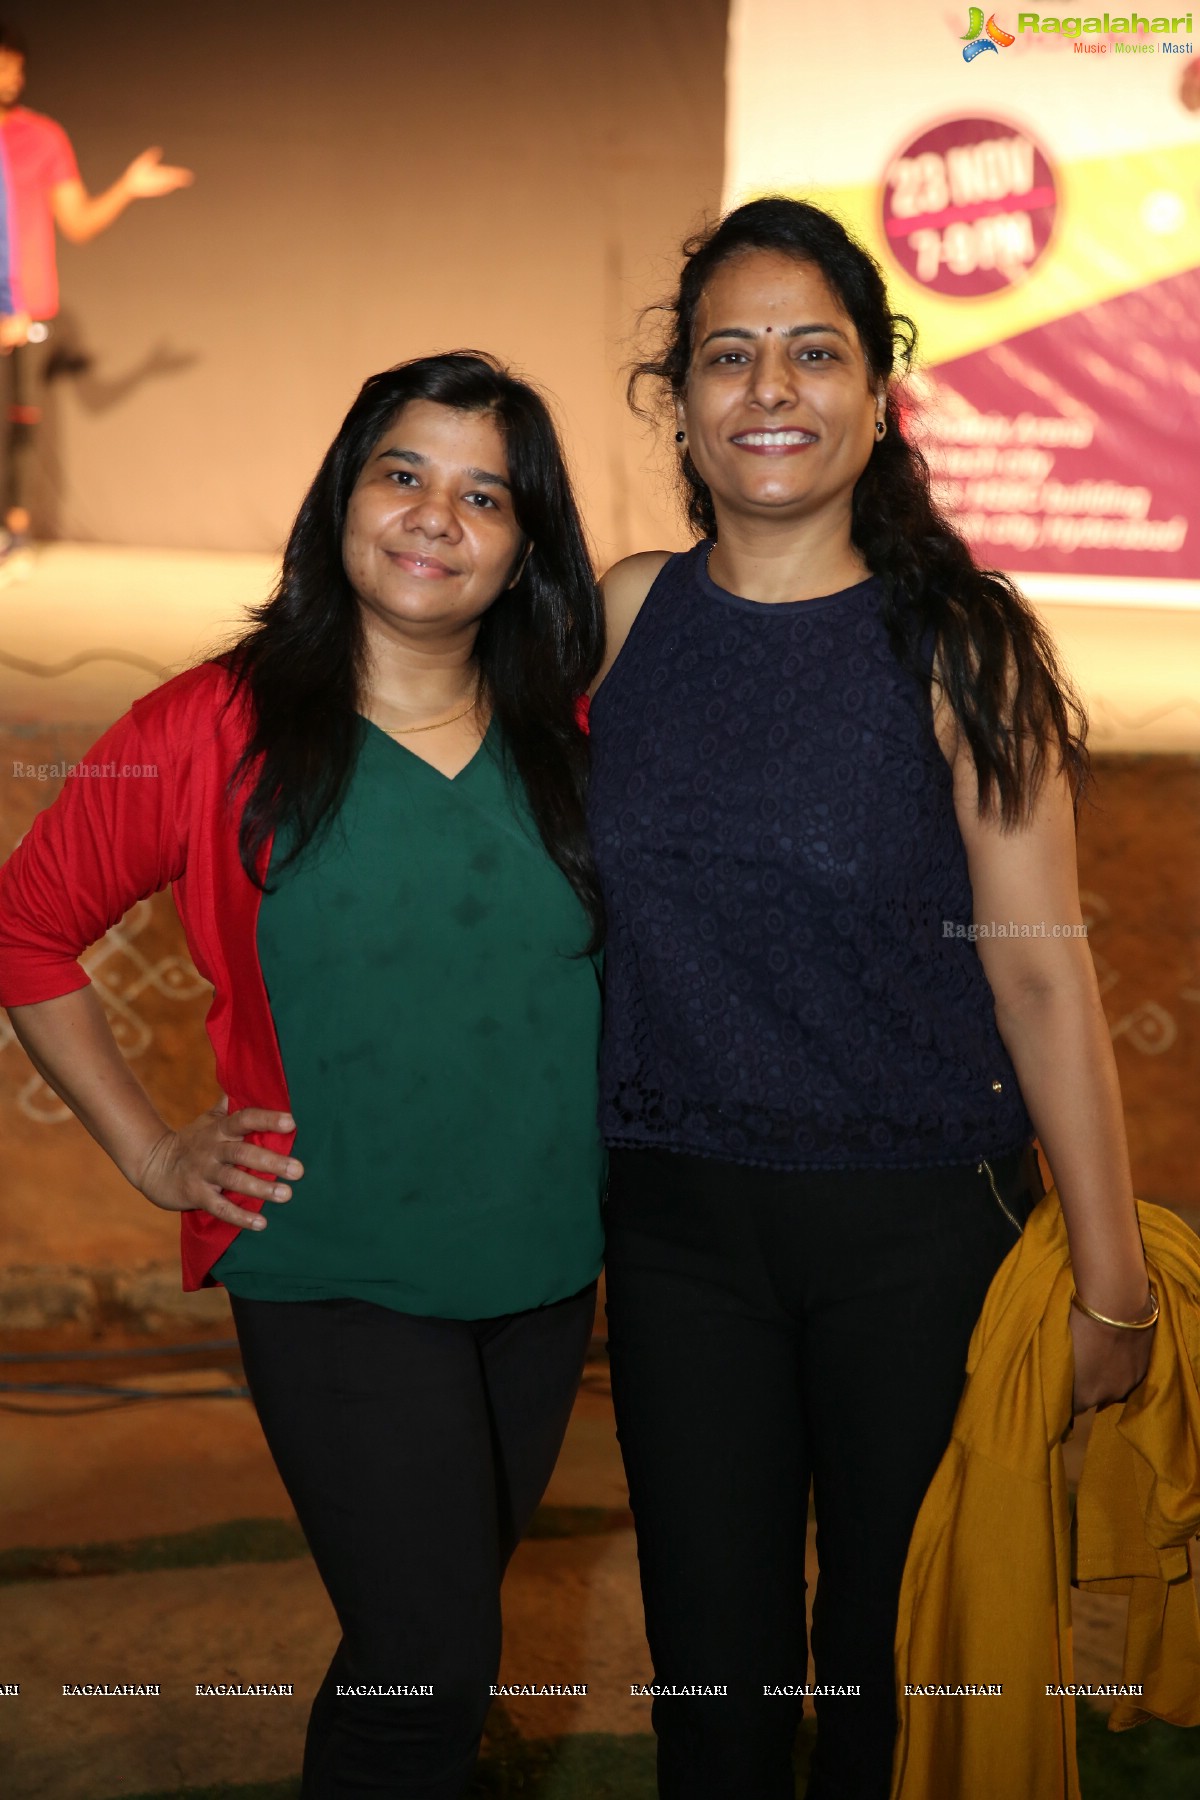 Zumba Fest 2018 - Celebrating 2 Decades of Zumba With Vijaya Tupurani @ Phoenix Arena